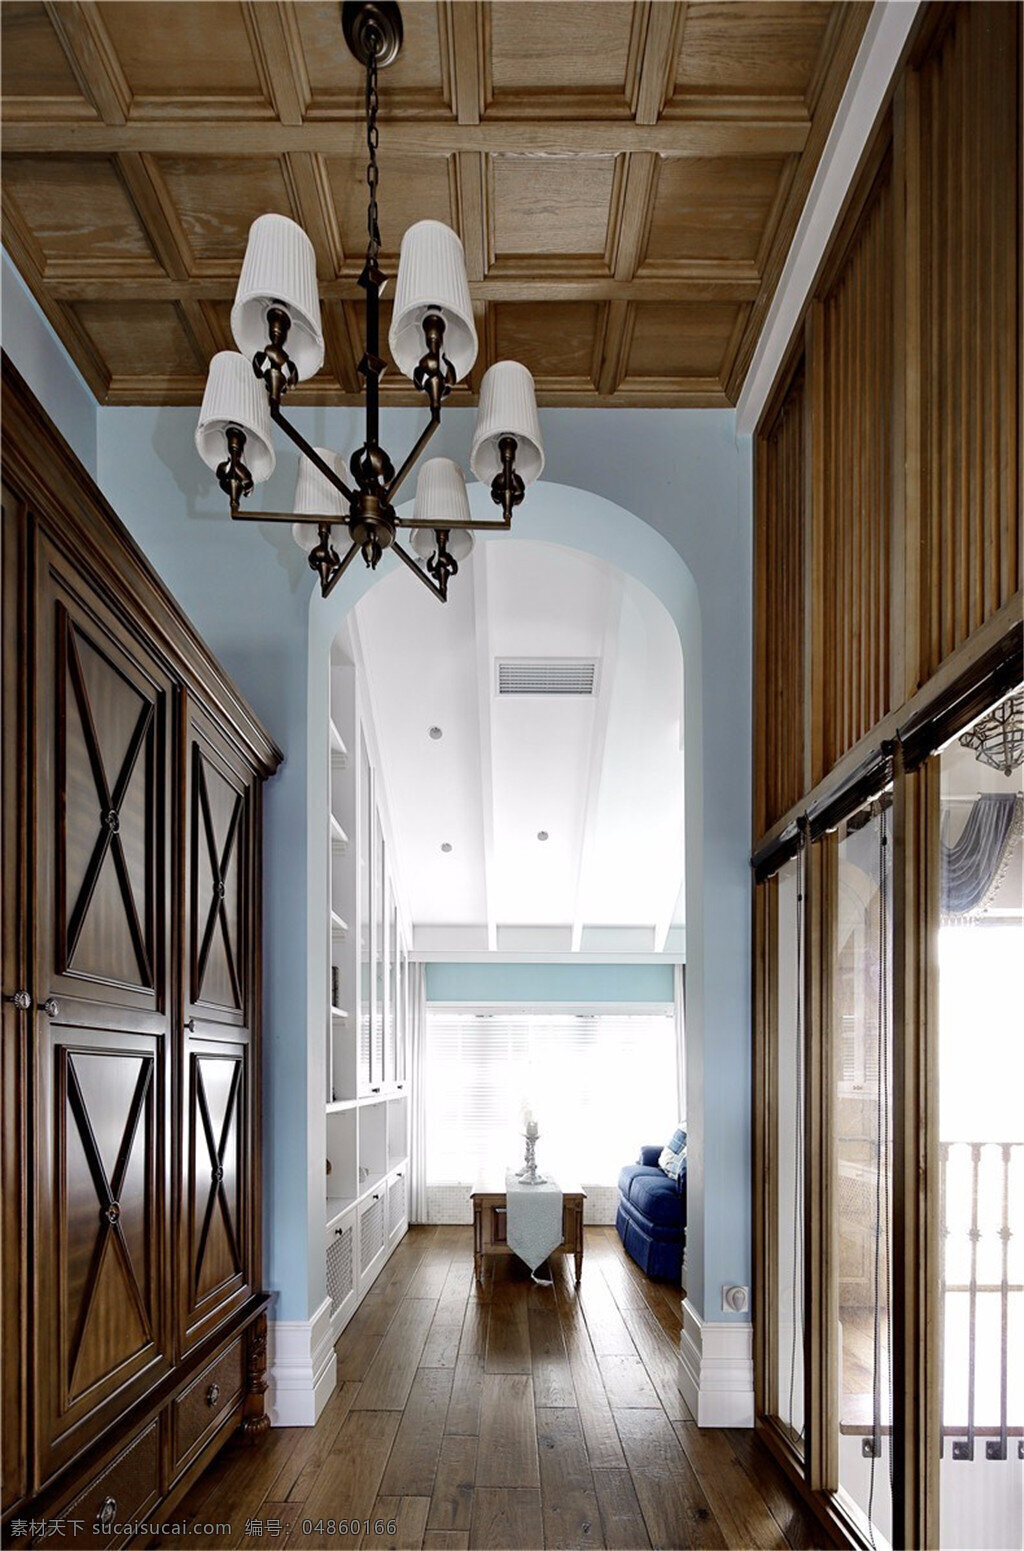 美式 创意 走廊 设计图 家居 家居生活 室内设计 装修 室内 家具 装修设计 环境设计 实木